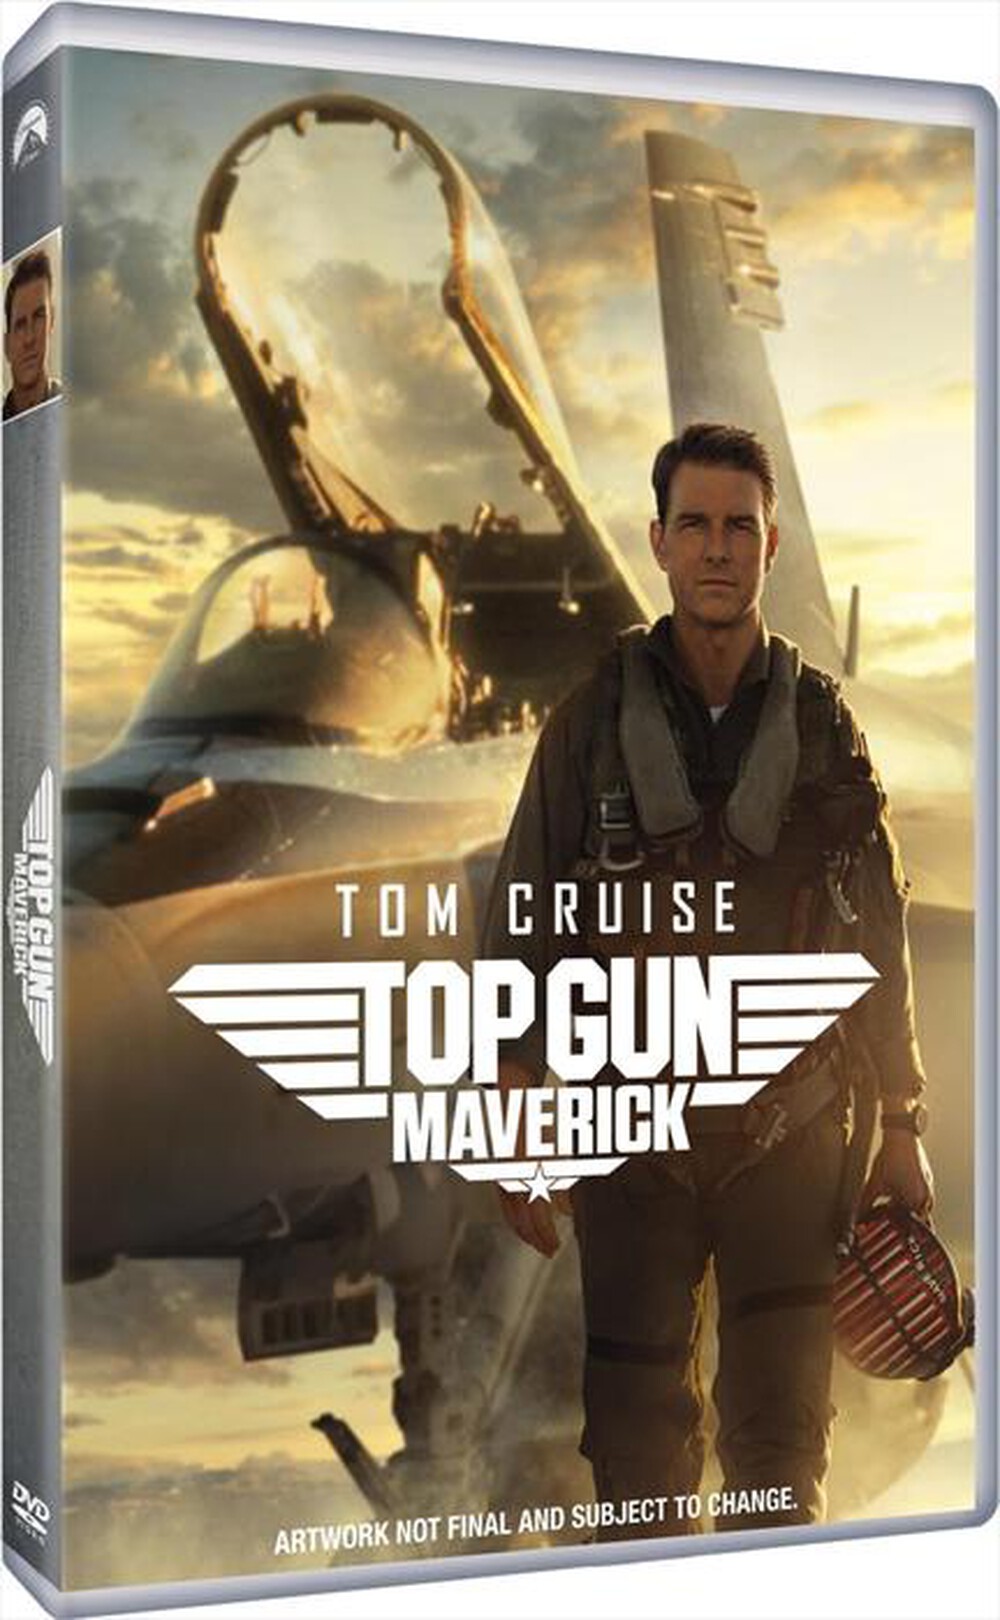 "PARAMOUNT PICTURE - Top Gun: Maverick"